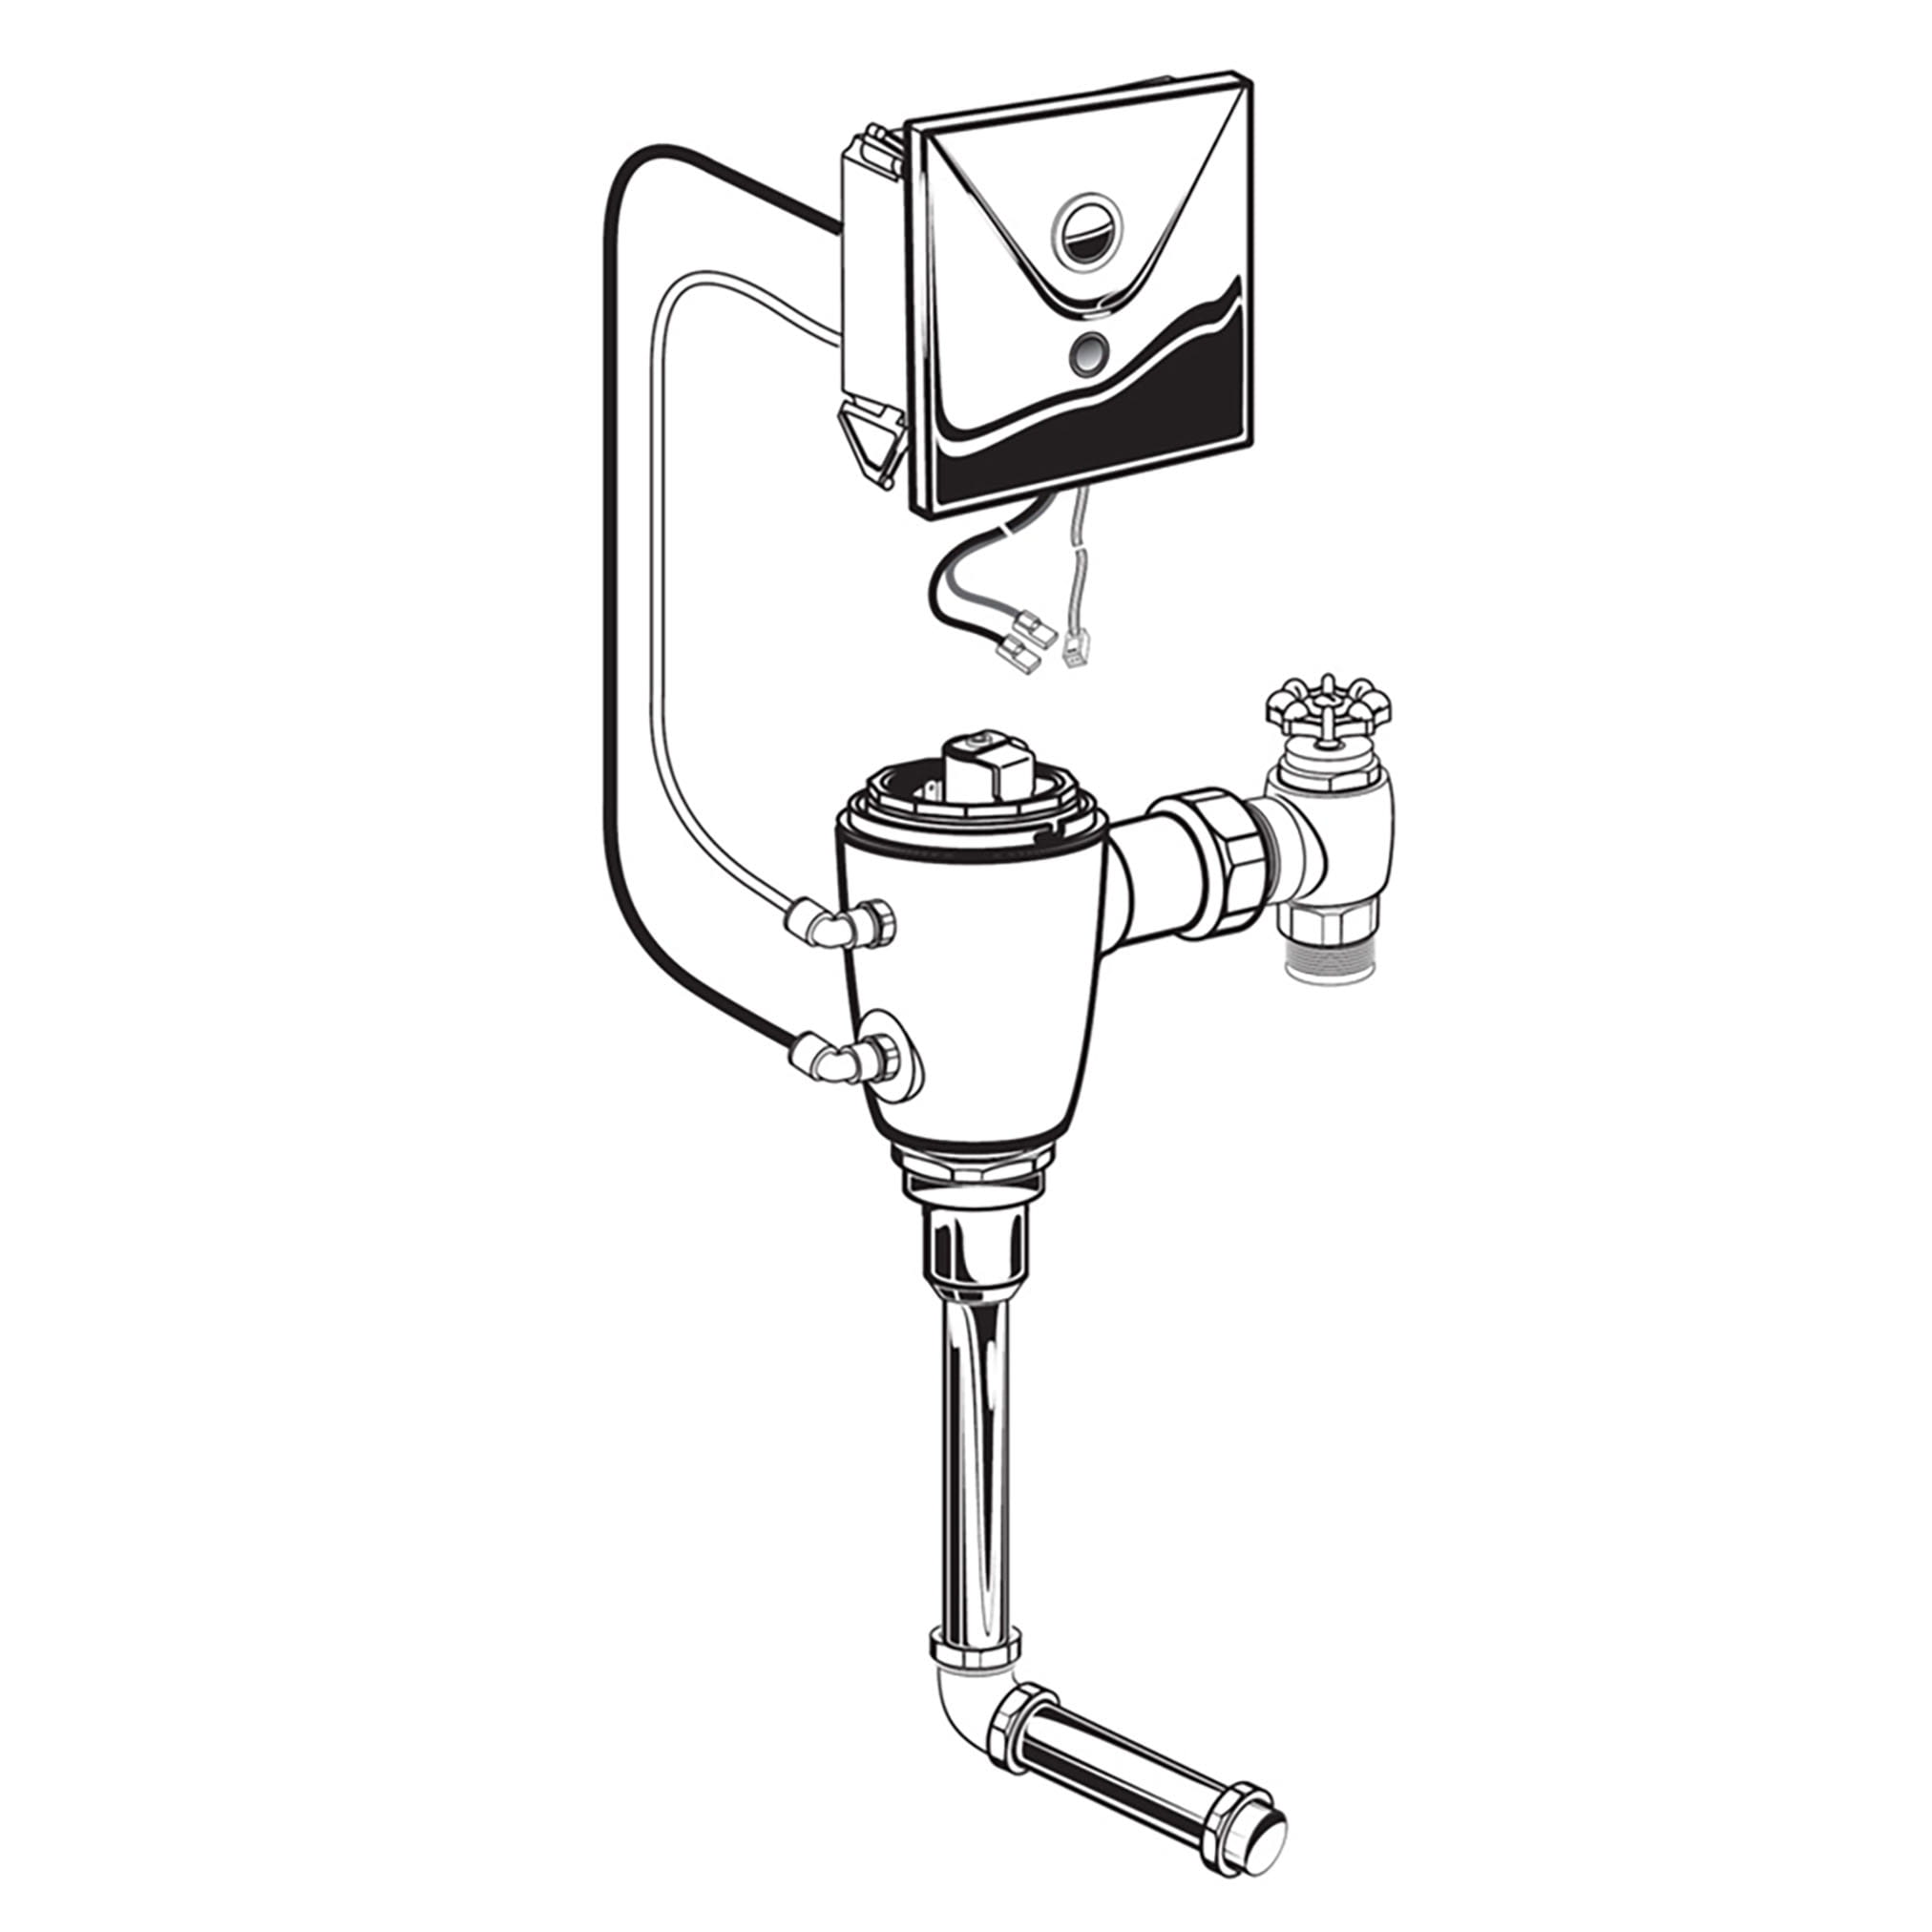 Ultima™ Selectronic - robinet de chasse dissimulé pour urinoir, modèle de base, de type à piston, 1,0 gpc/3,8 lpc